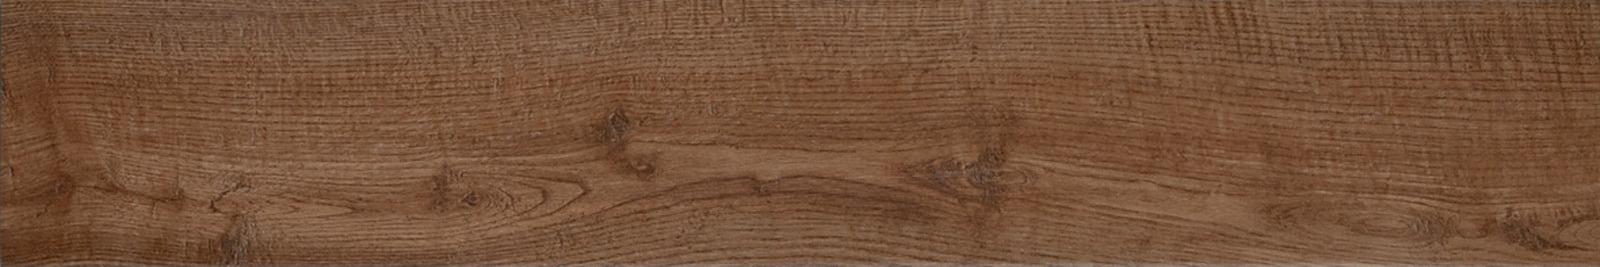 Marazzi L-Tiles Wood Castagno K5ME 15x90 8mm Naturalle/Matt pločica 1.080 51.840